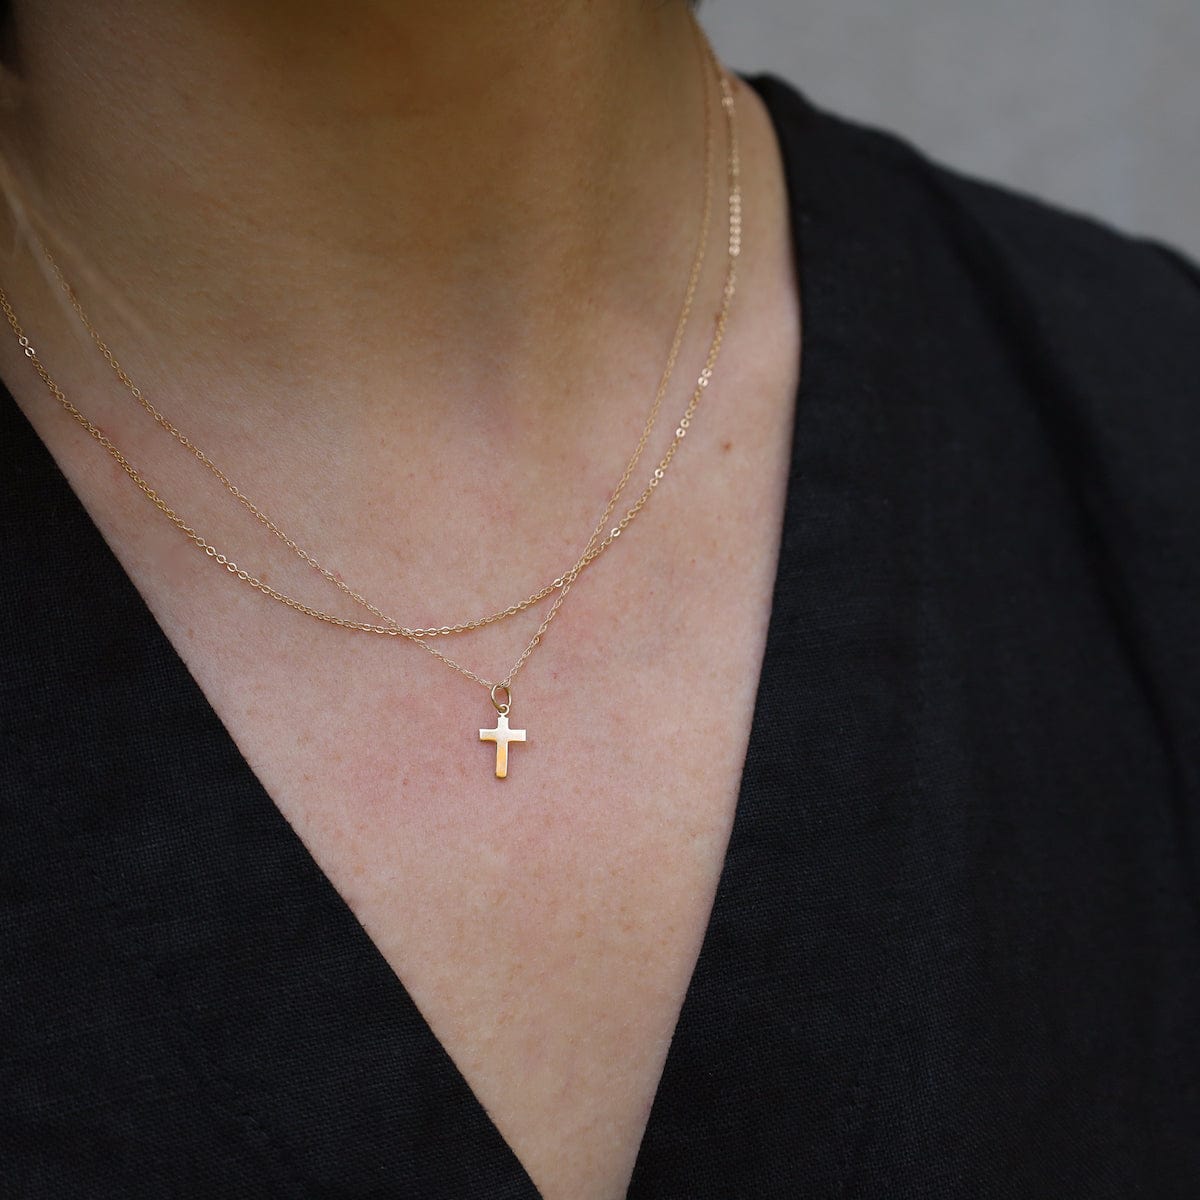 Diamond Cross Necklace / Tiny Diamond Cross Pendant / 14k Gold Cross  Necklace / Small Diamond Cross / Baptism Gift / Gift for Mom Idea - Etsy